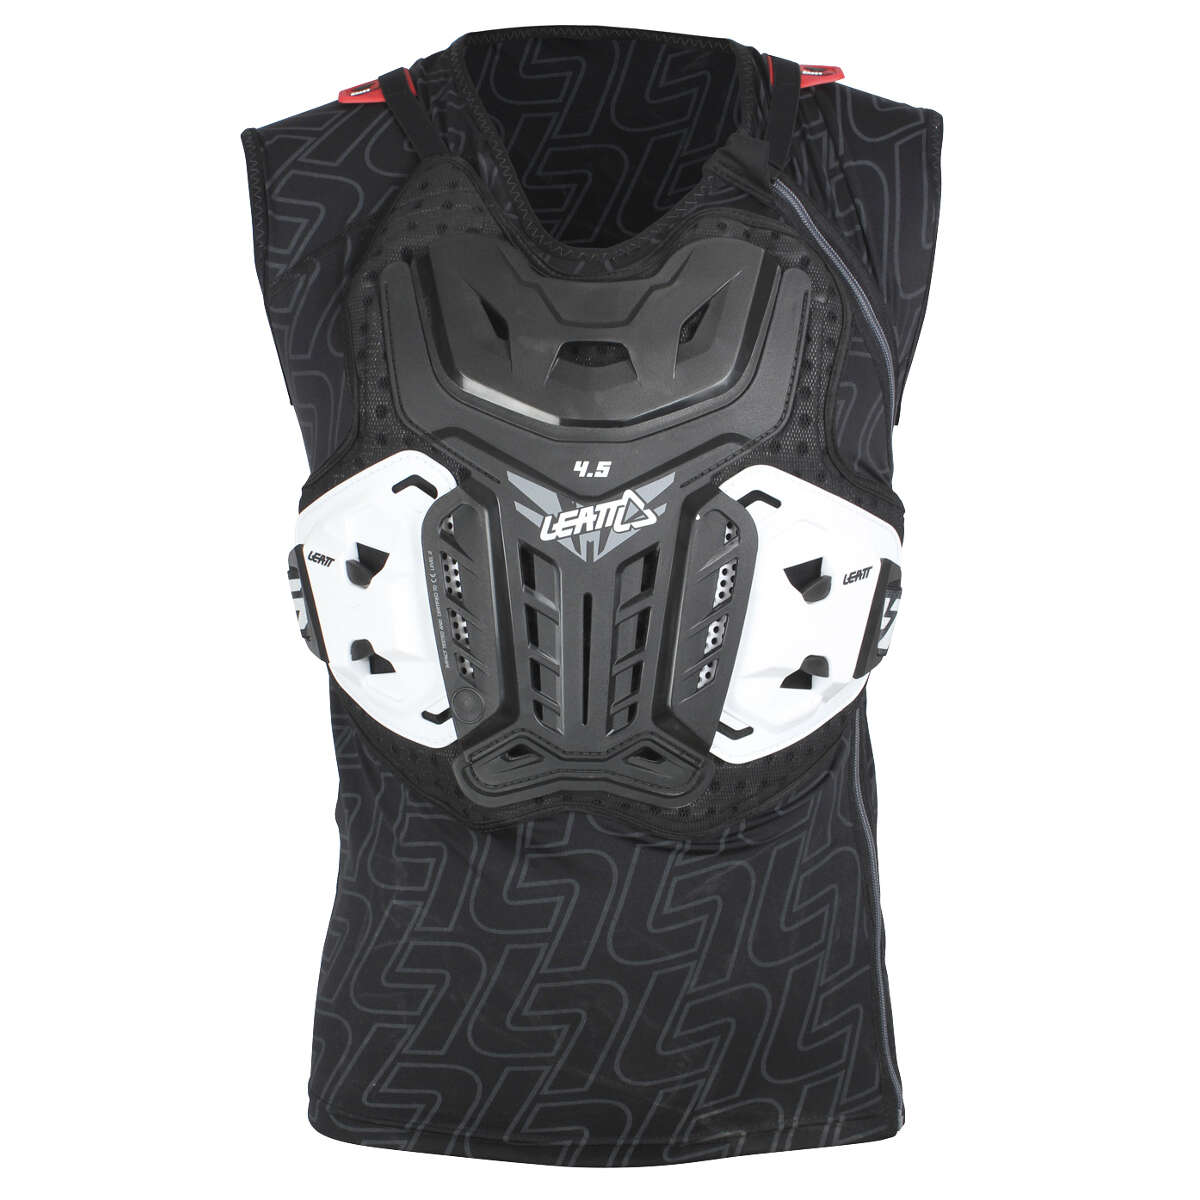 Leatt Protector Vest Body Vest 4.5 Black